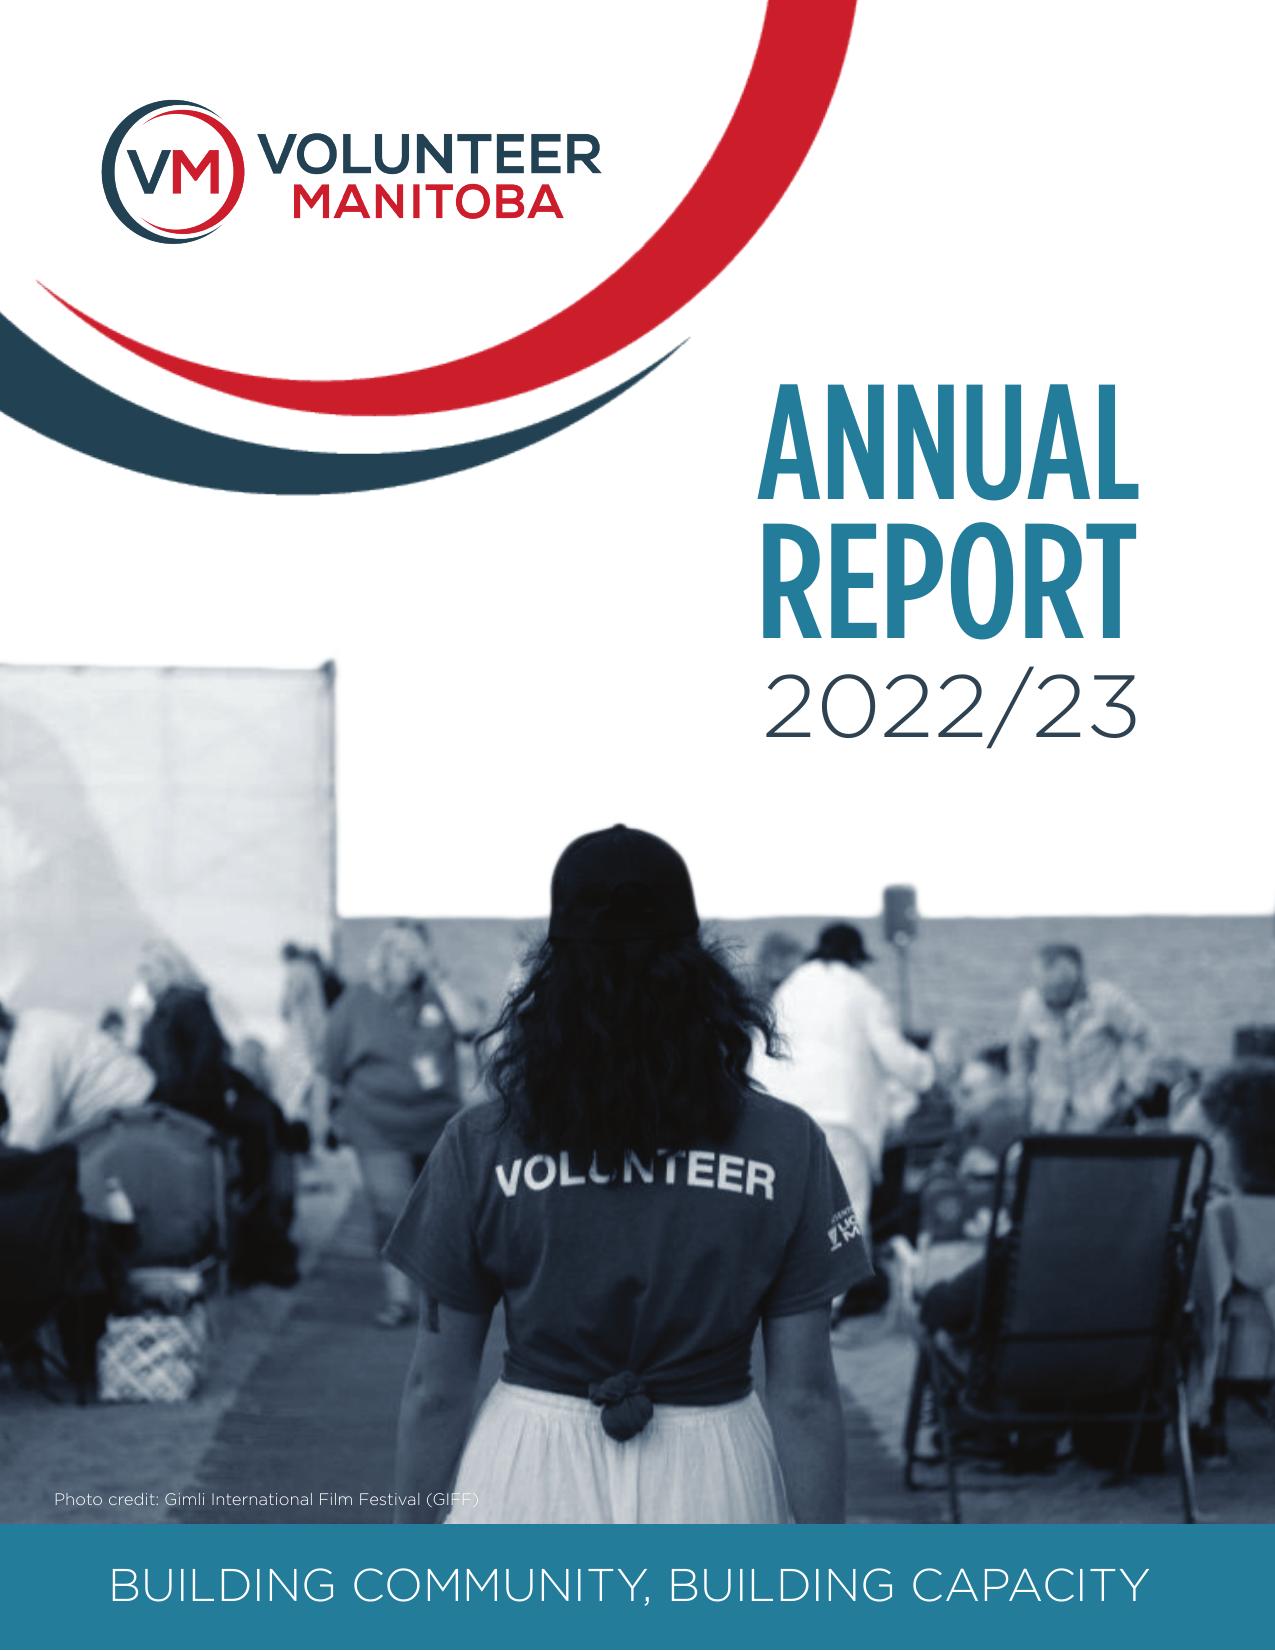 VOLUNTEERMANITOBA 2023 Annual Report